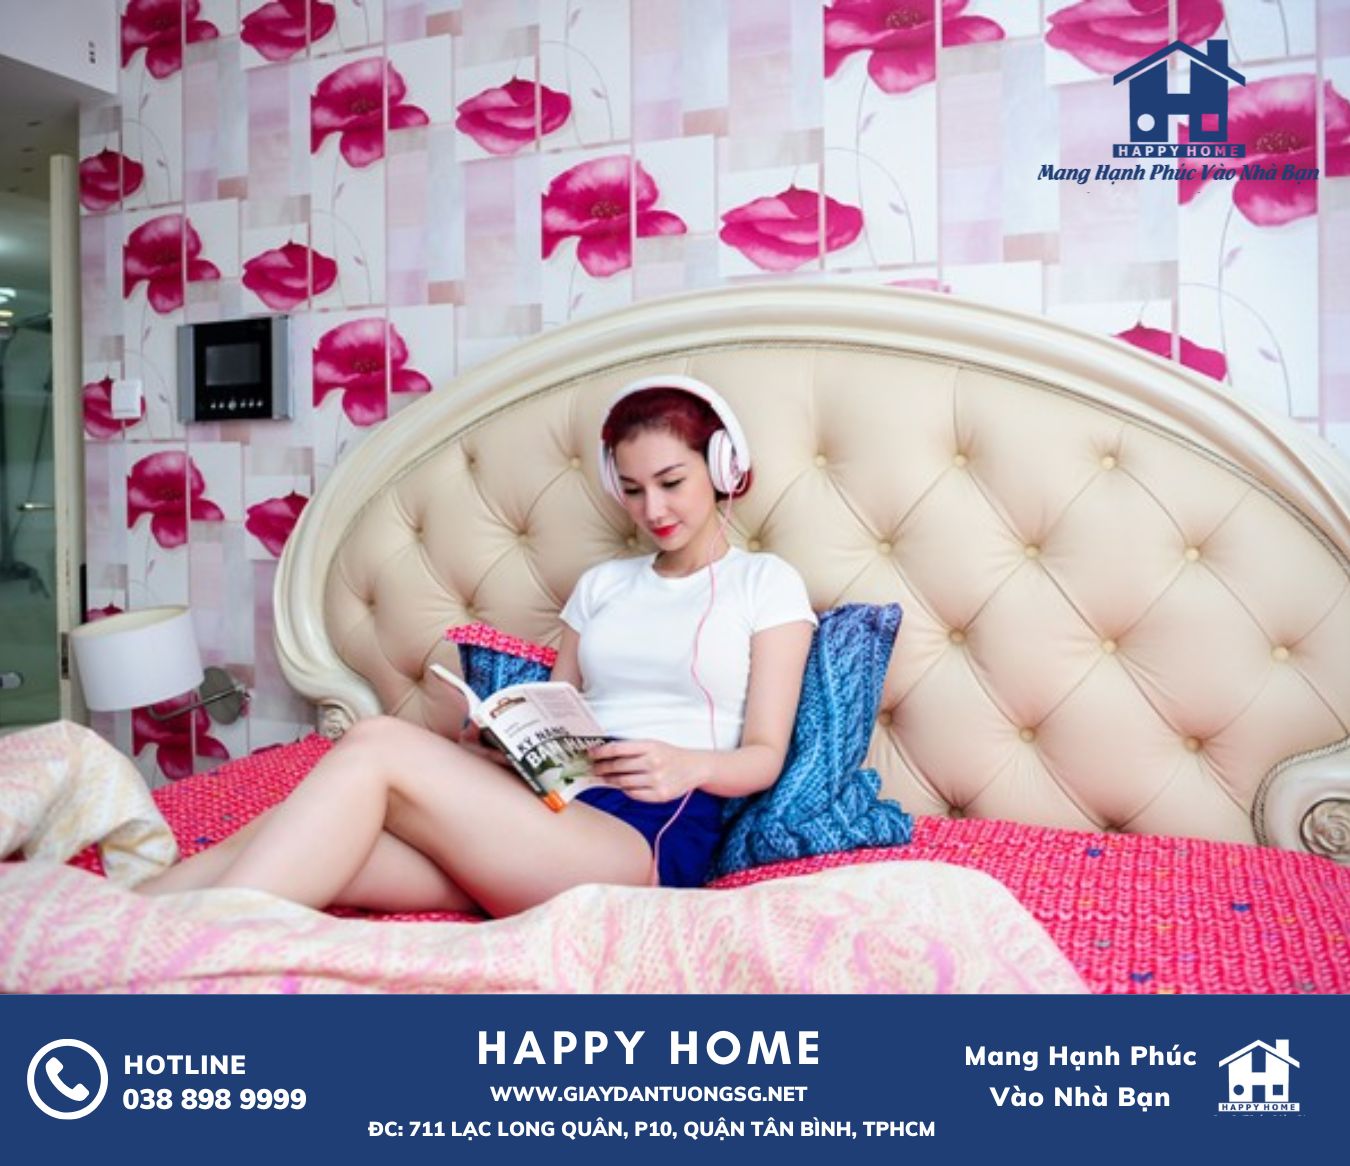 Sự kết hợp tuyệt vời giữa giấy dán tường và nội thất trong căn hộ của Quỳnh Chi